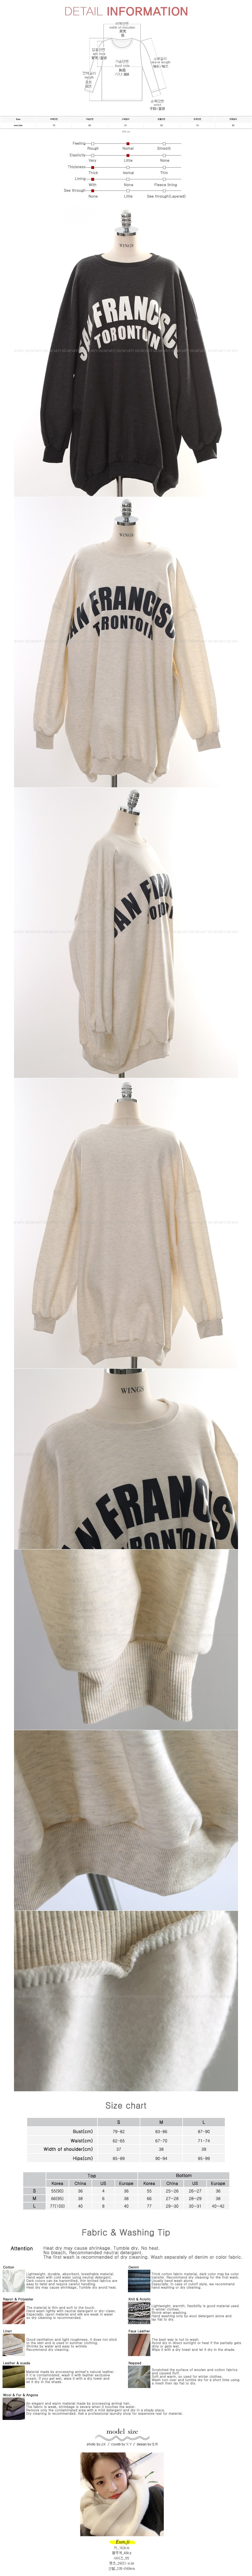 Oversized Sweatshirt With Fleece Lining #Oatmeal One Size(Free)